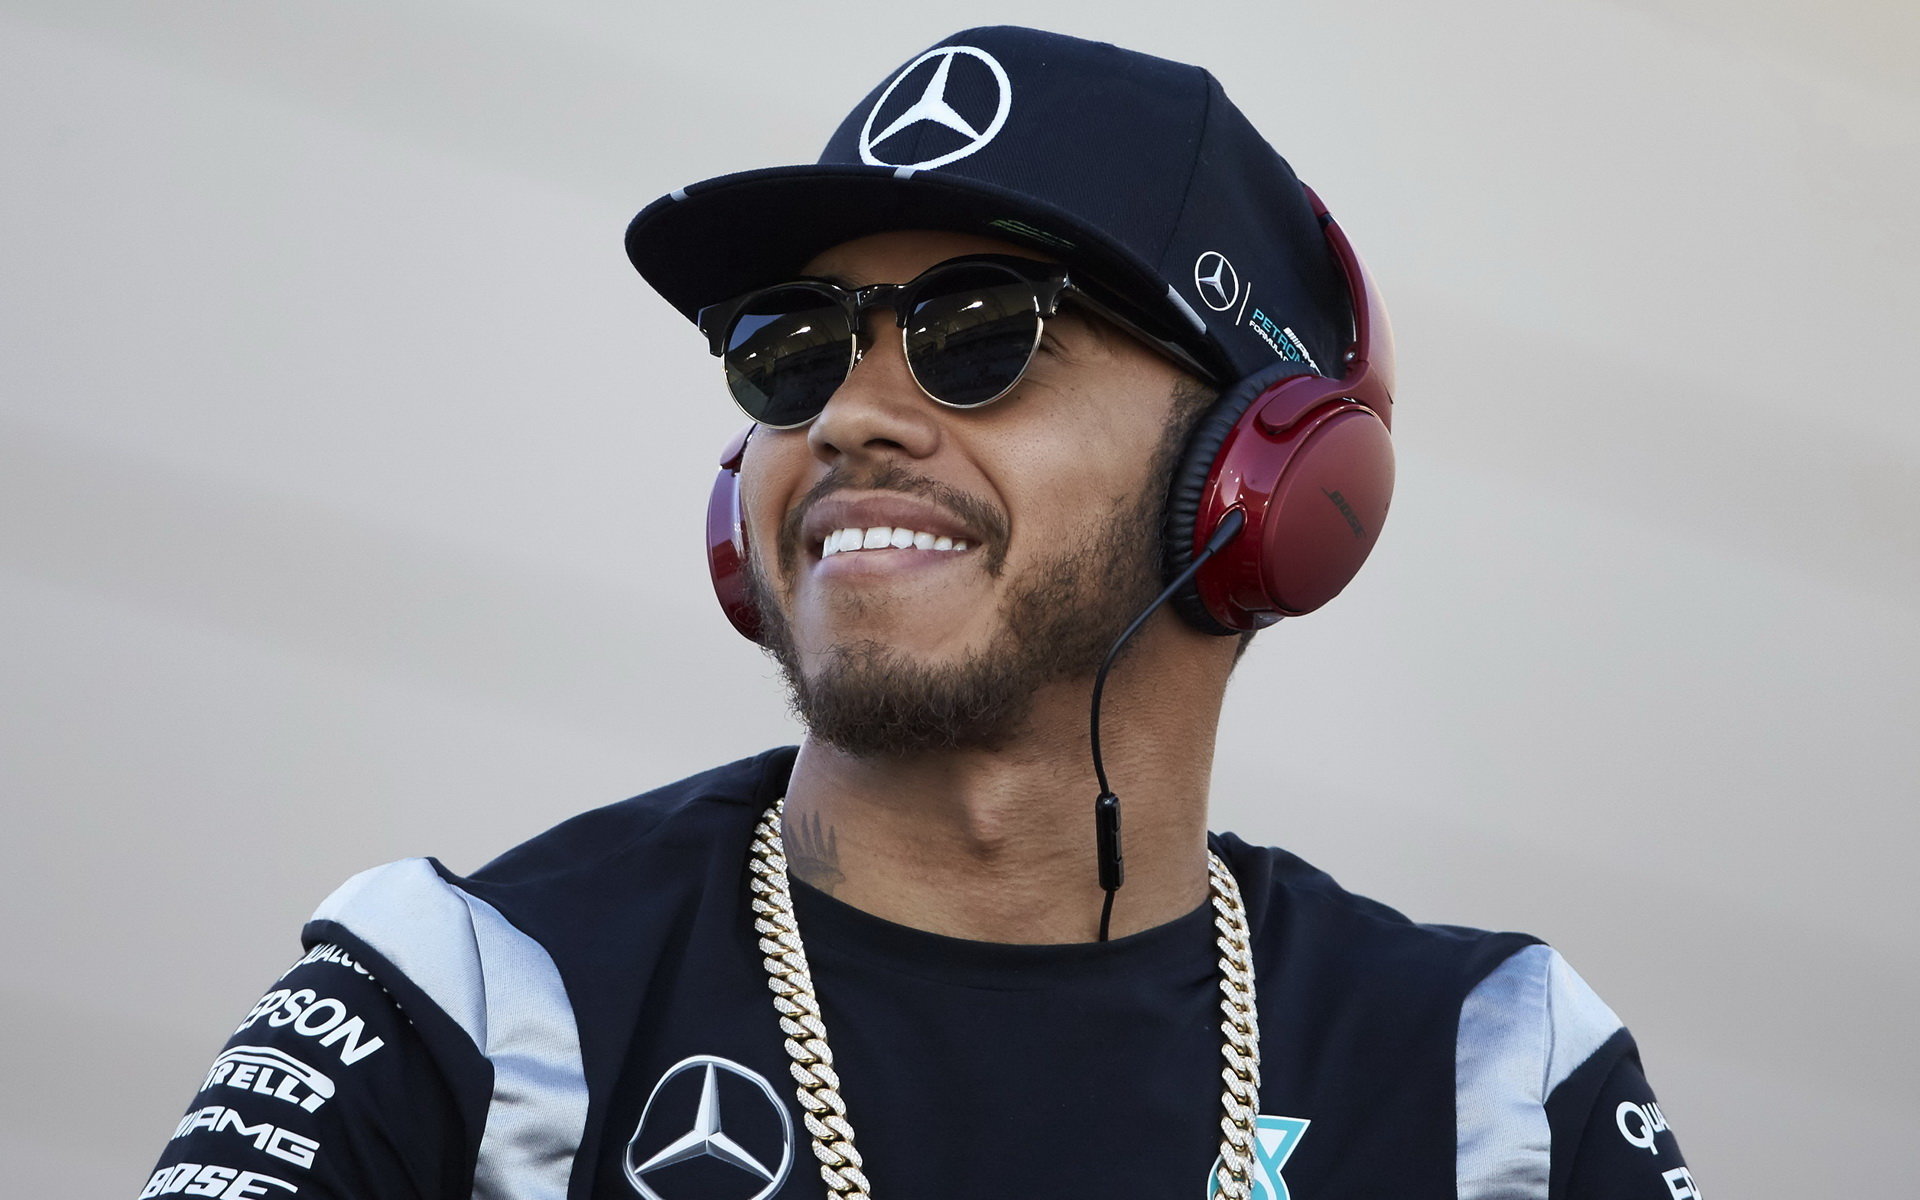 Lewis už má vyděláno a F1 ho přestává bavit - i takové zprávy lze na internetu najít